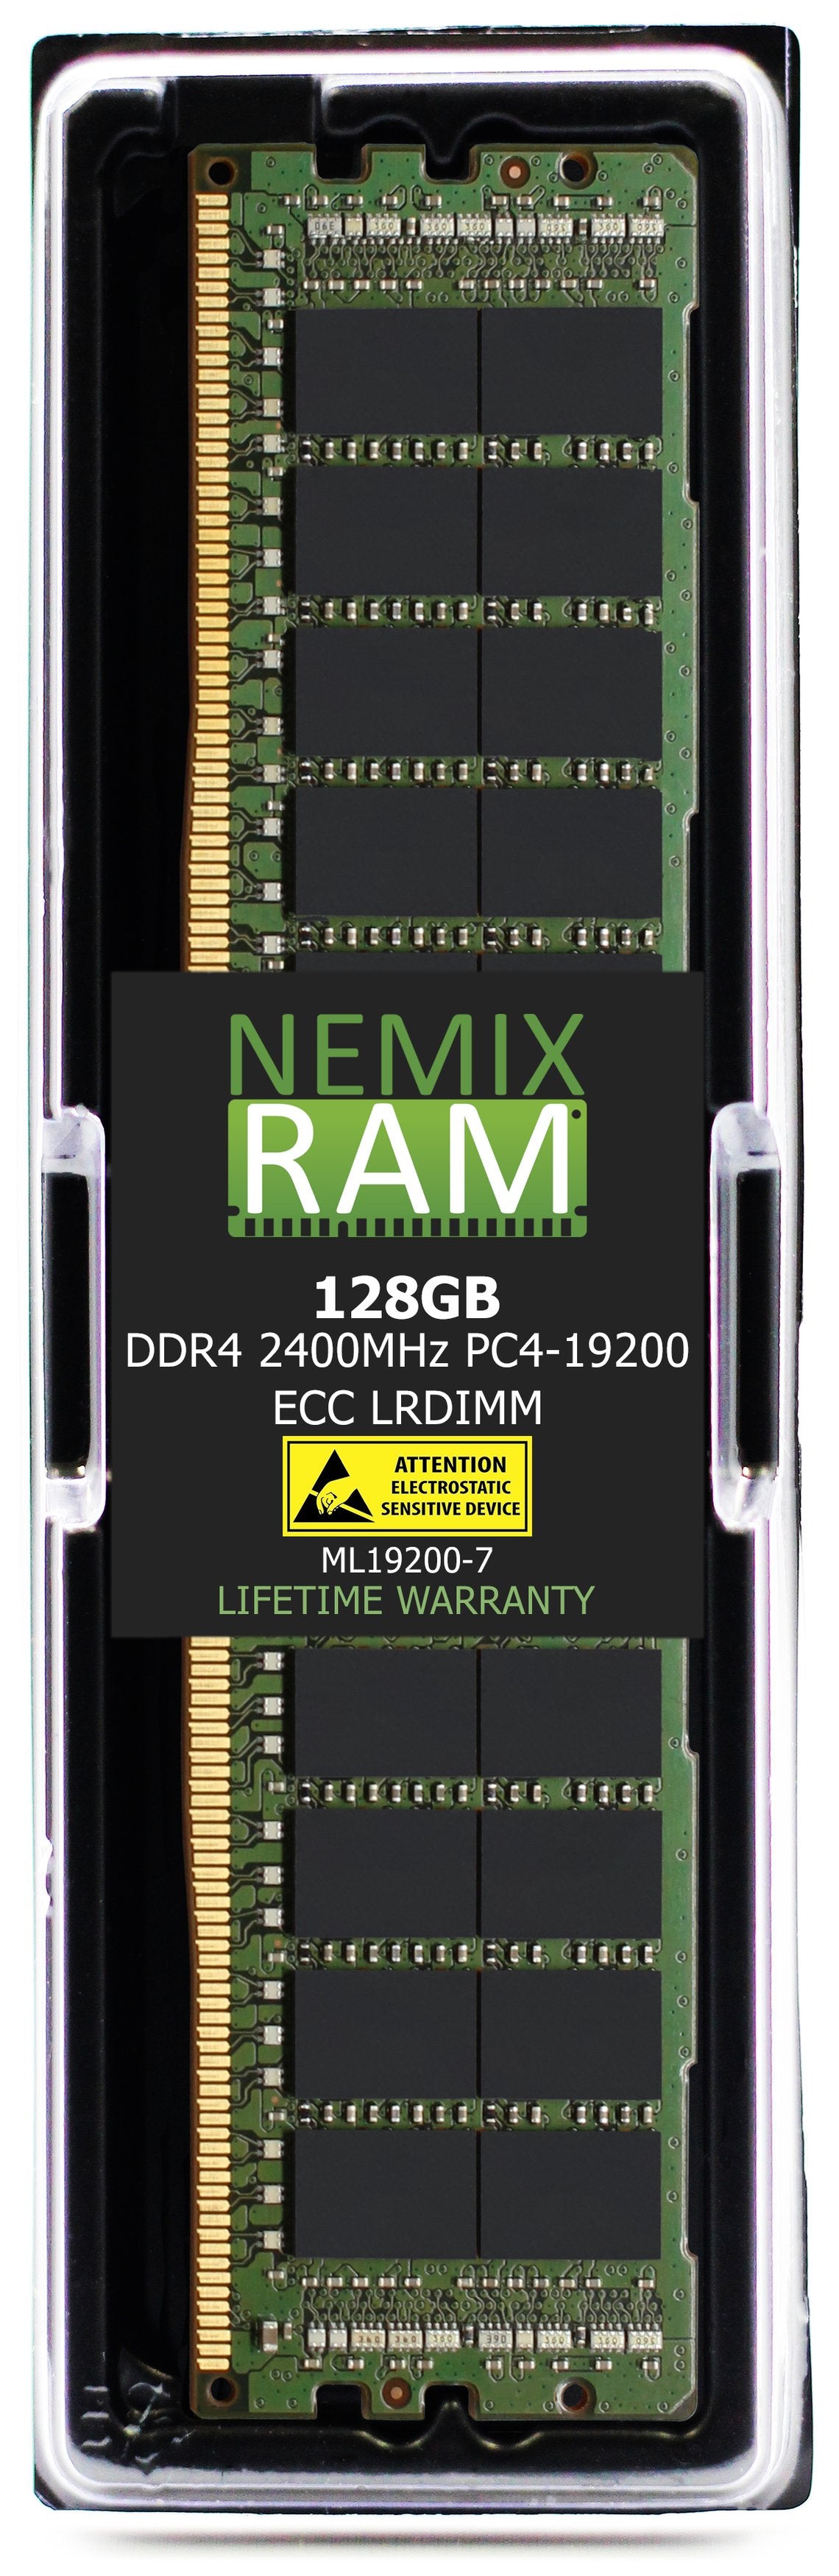 Hynix HMABAGL7A4R4N-UL 128GB DDR4 2400MHZ PC4-19200 LRDIMM Compatible Memory Module